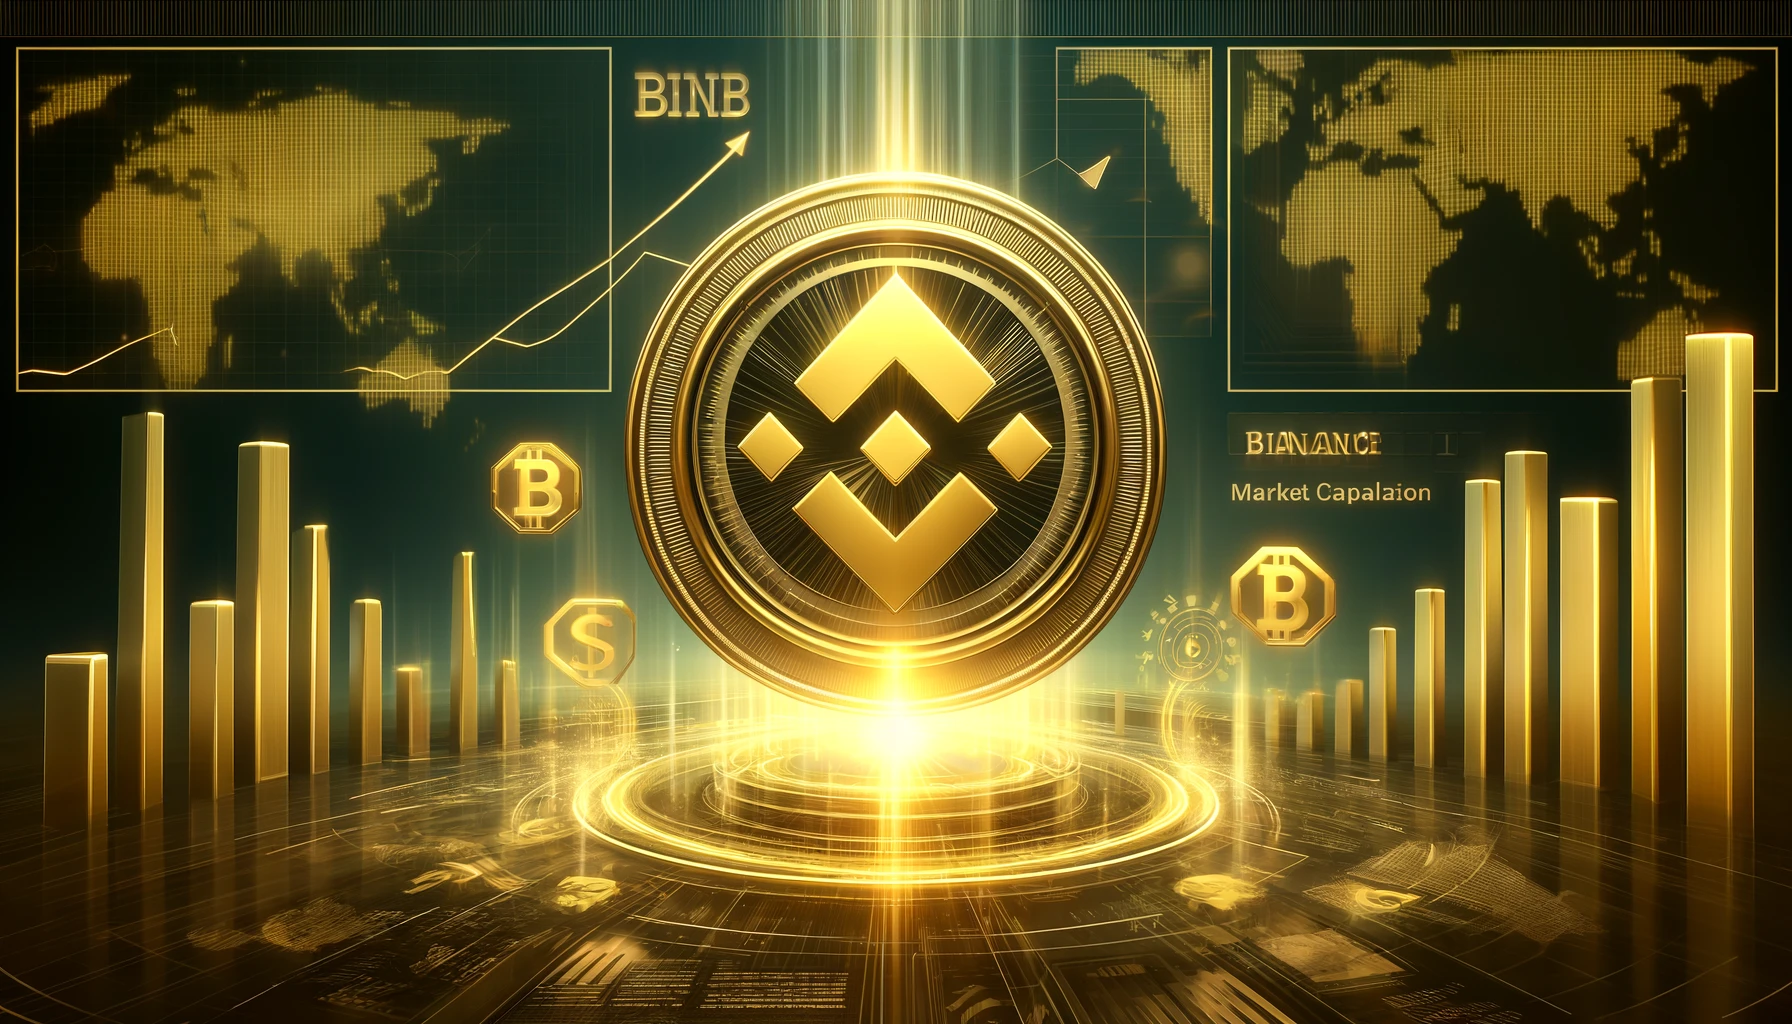 BNB News: Der Binance Coin erreicht 100 Milliarden Dollar Marktkapitalisierung